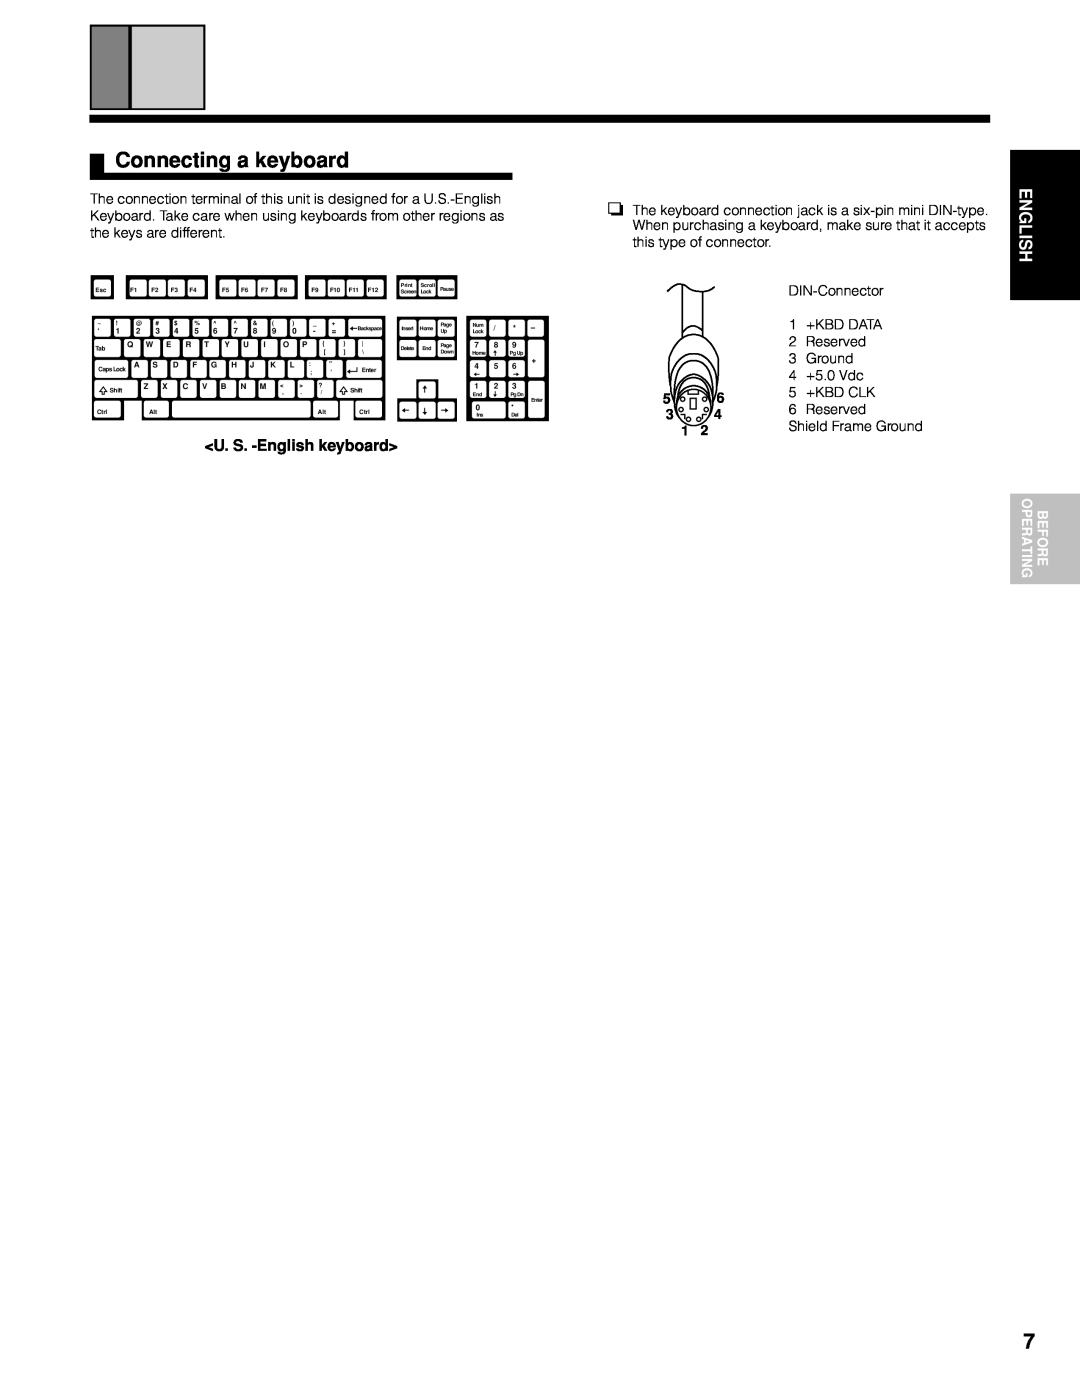 Marantz CC9100 manual Connecting a keyboard, U. S. -Englishkeyboard 